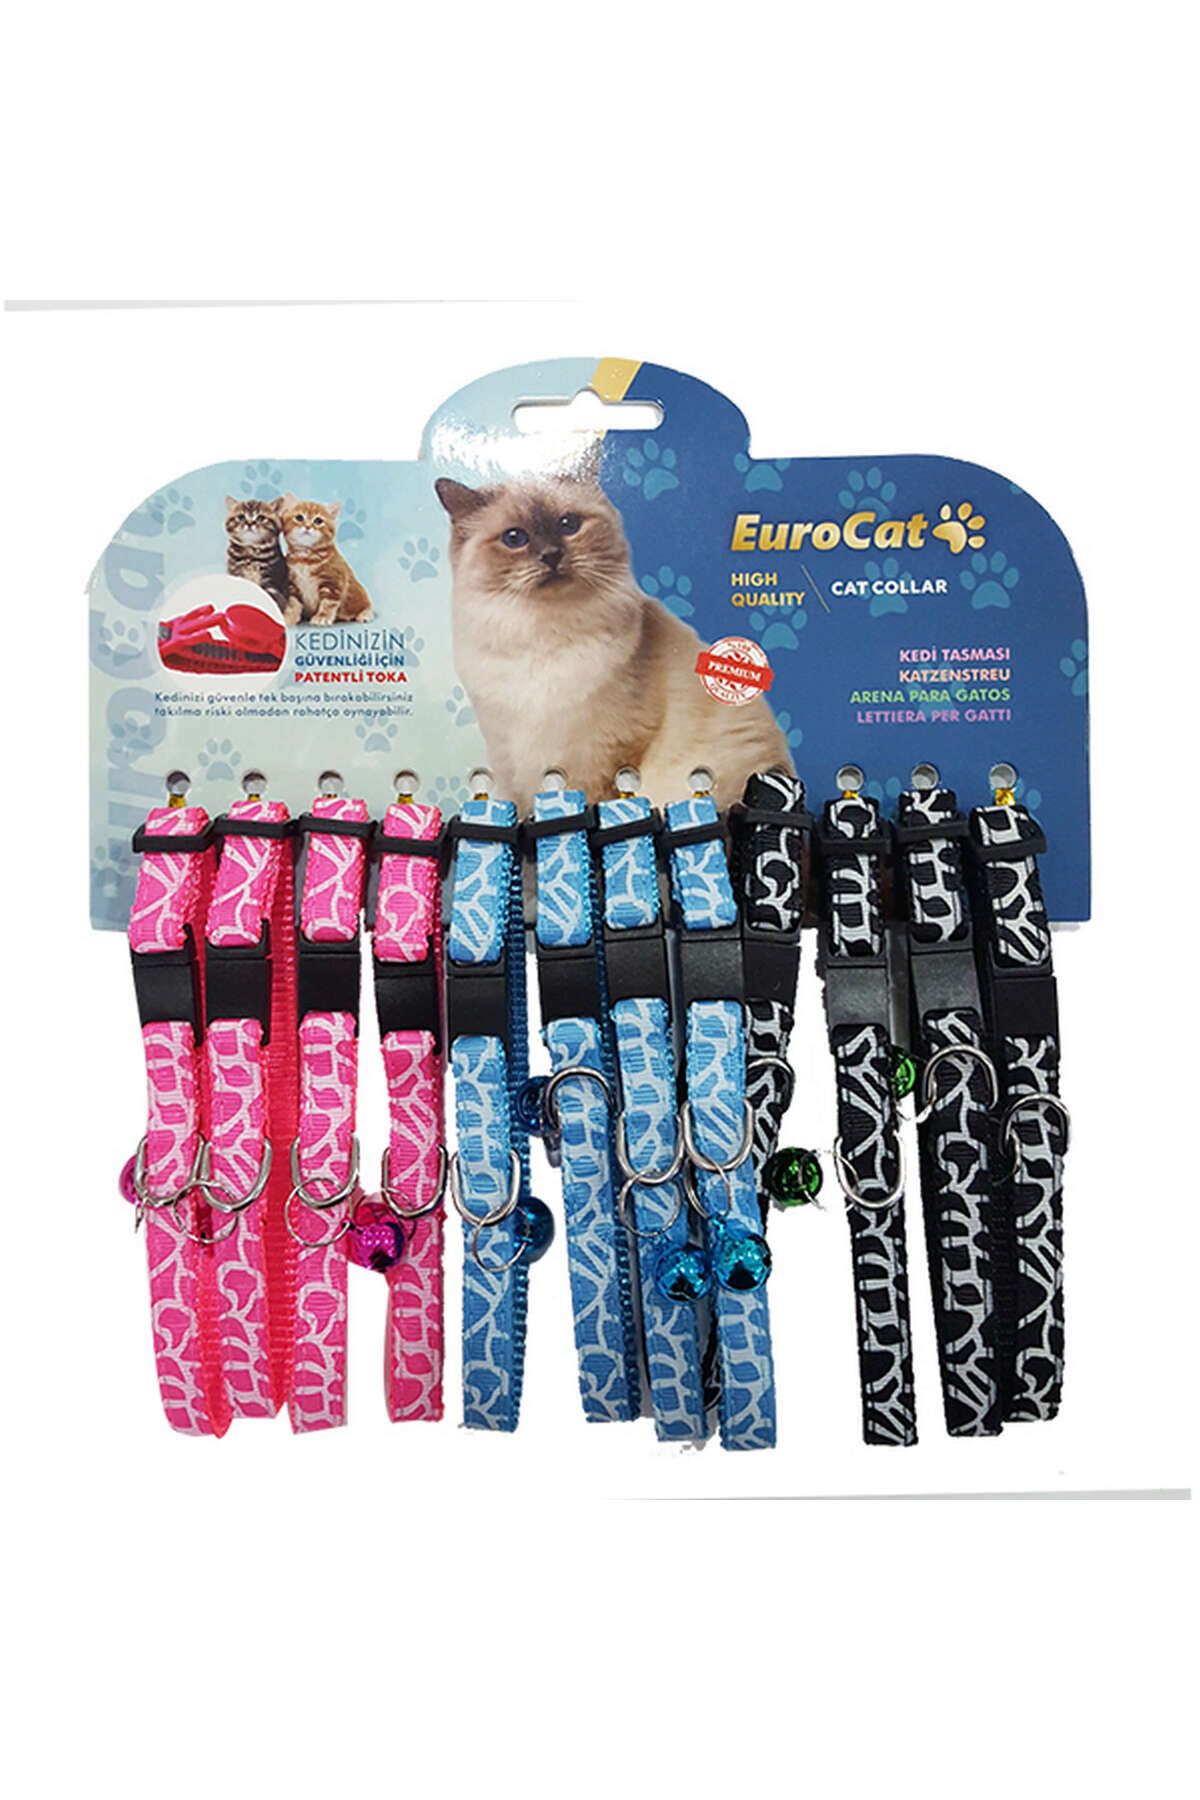 Eurocat Çizgi Desenli Çıngıraklı Kedi Boyun Tasması 12'li 306104